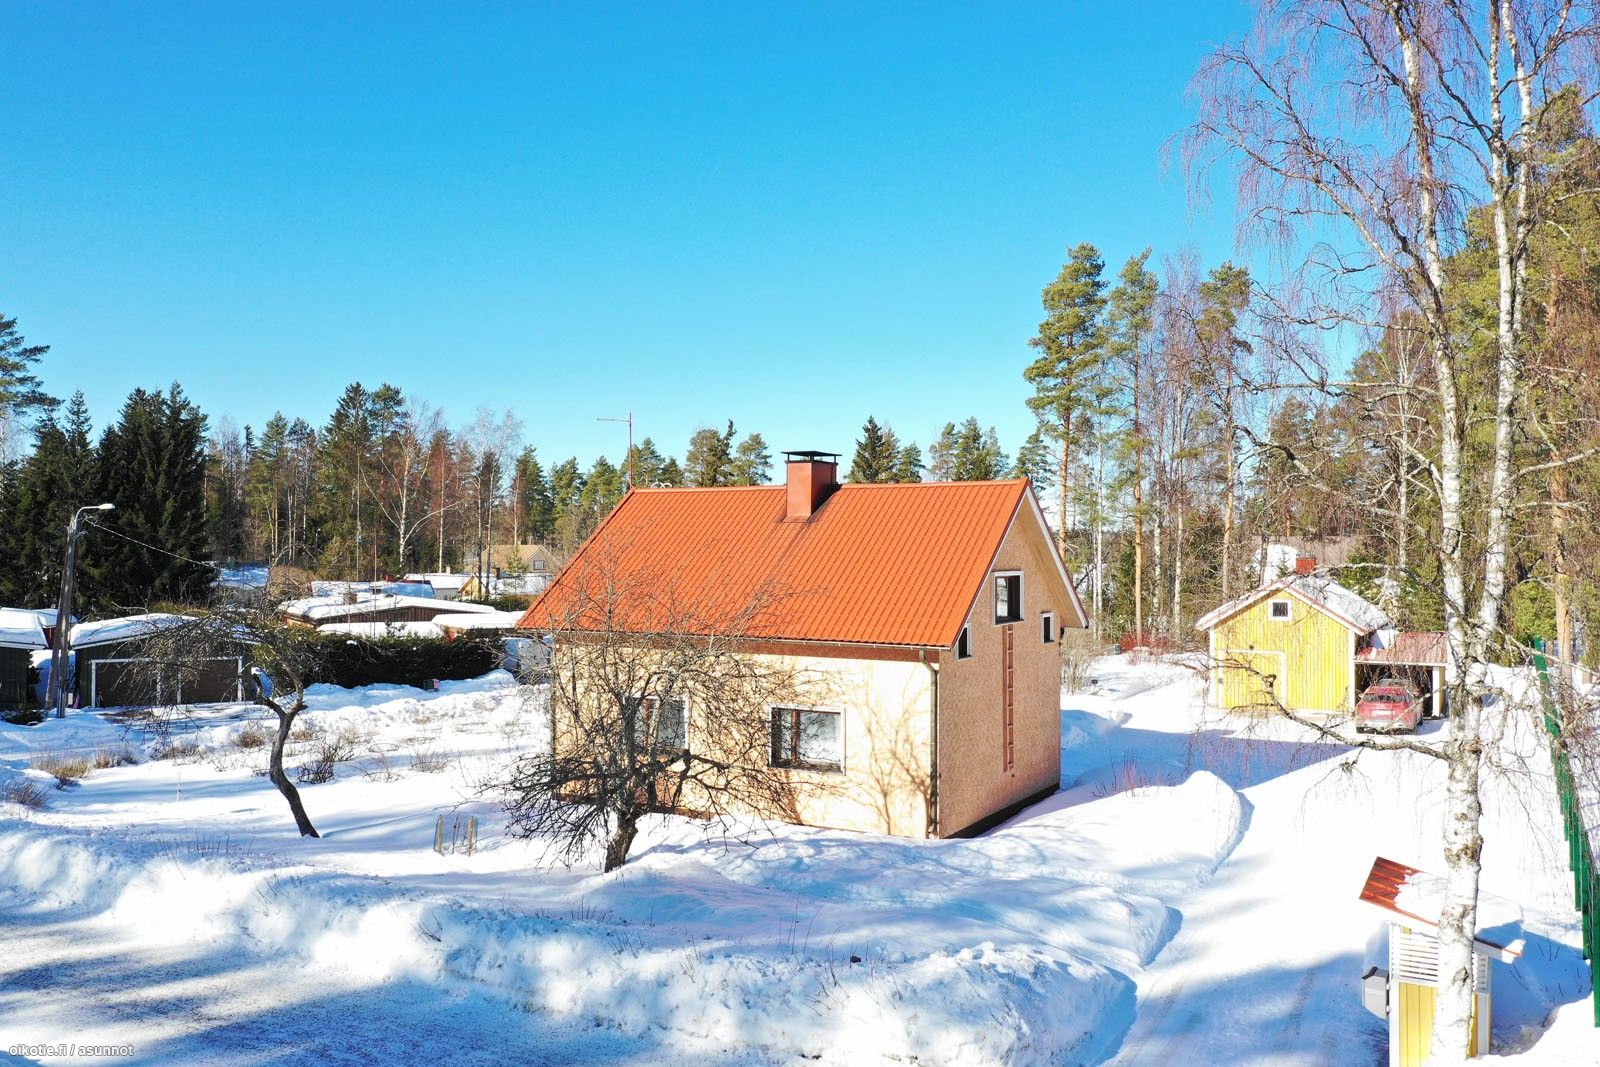 100 m² Koulukatu 4, 41160 Jyväskylä 3mh, olohuone, keittiö, wc, sauna,  kylpyhuone, kuisti – Oikotie 17210510 – SKVL